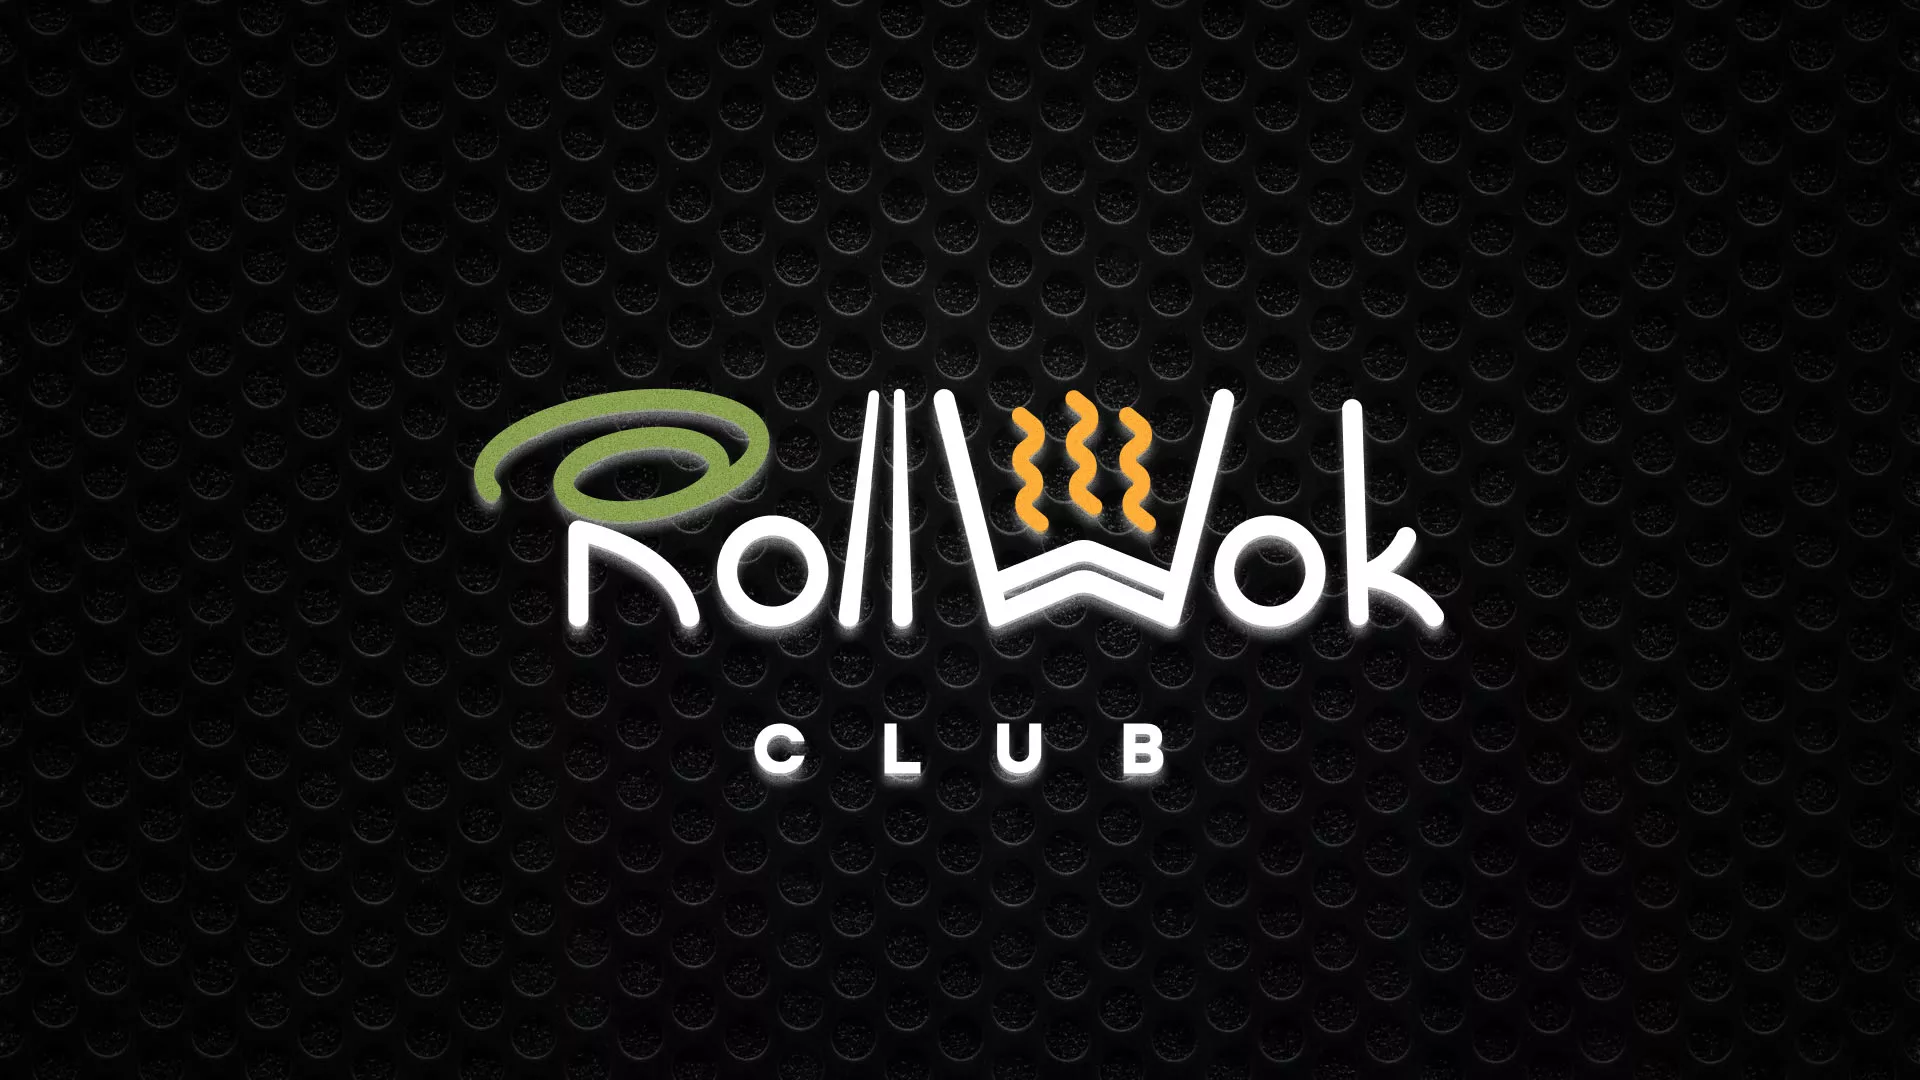 Брендирование торговых точек суши-бара «Roll Wok Club» в Ржеве